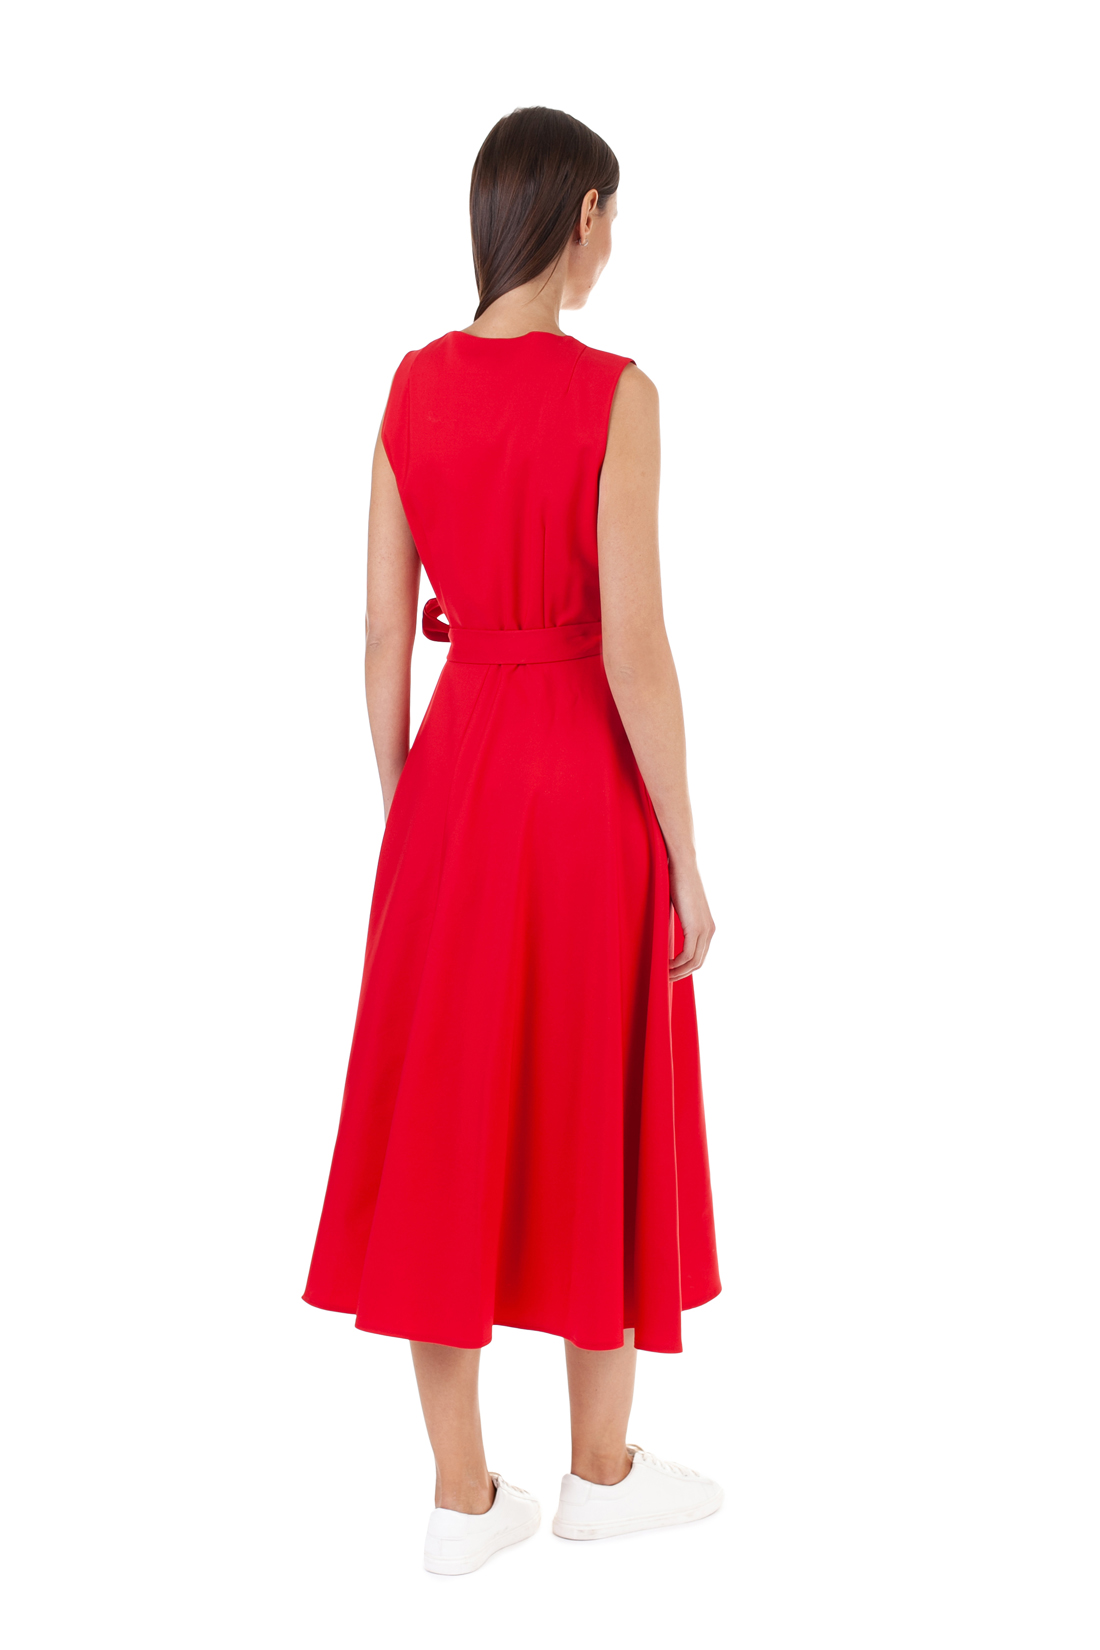 Платье без рукавов (арт. baon B458135), размер XS, цвет красный Платье без рукавов (арт. baon B458135) - фото 5